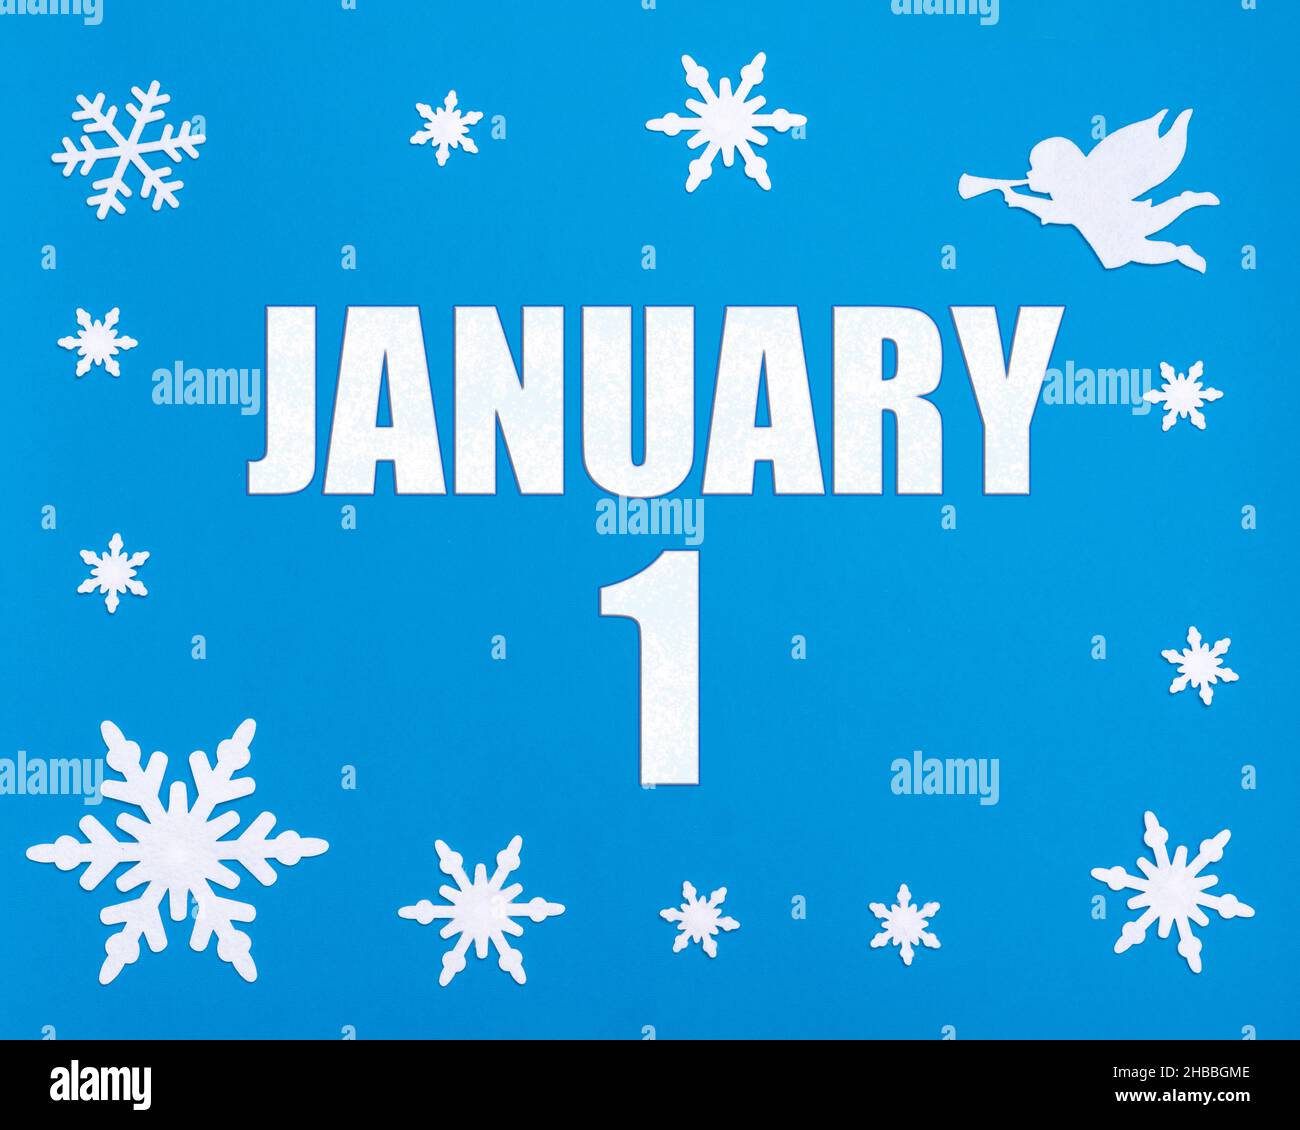 Janvier 1st.Fond bleu hiver avec flocons de neige, ange et date du calendrier.Jour 1 du mois.Concept mois d'hiver, jour de l'année. Banque D'Images